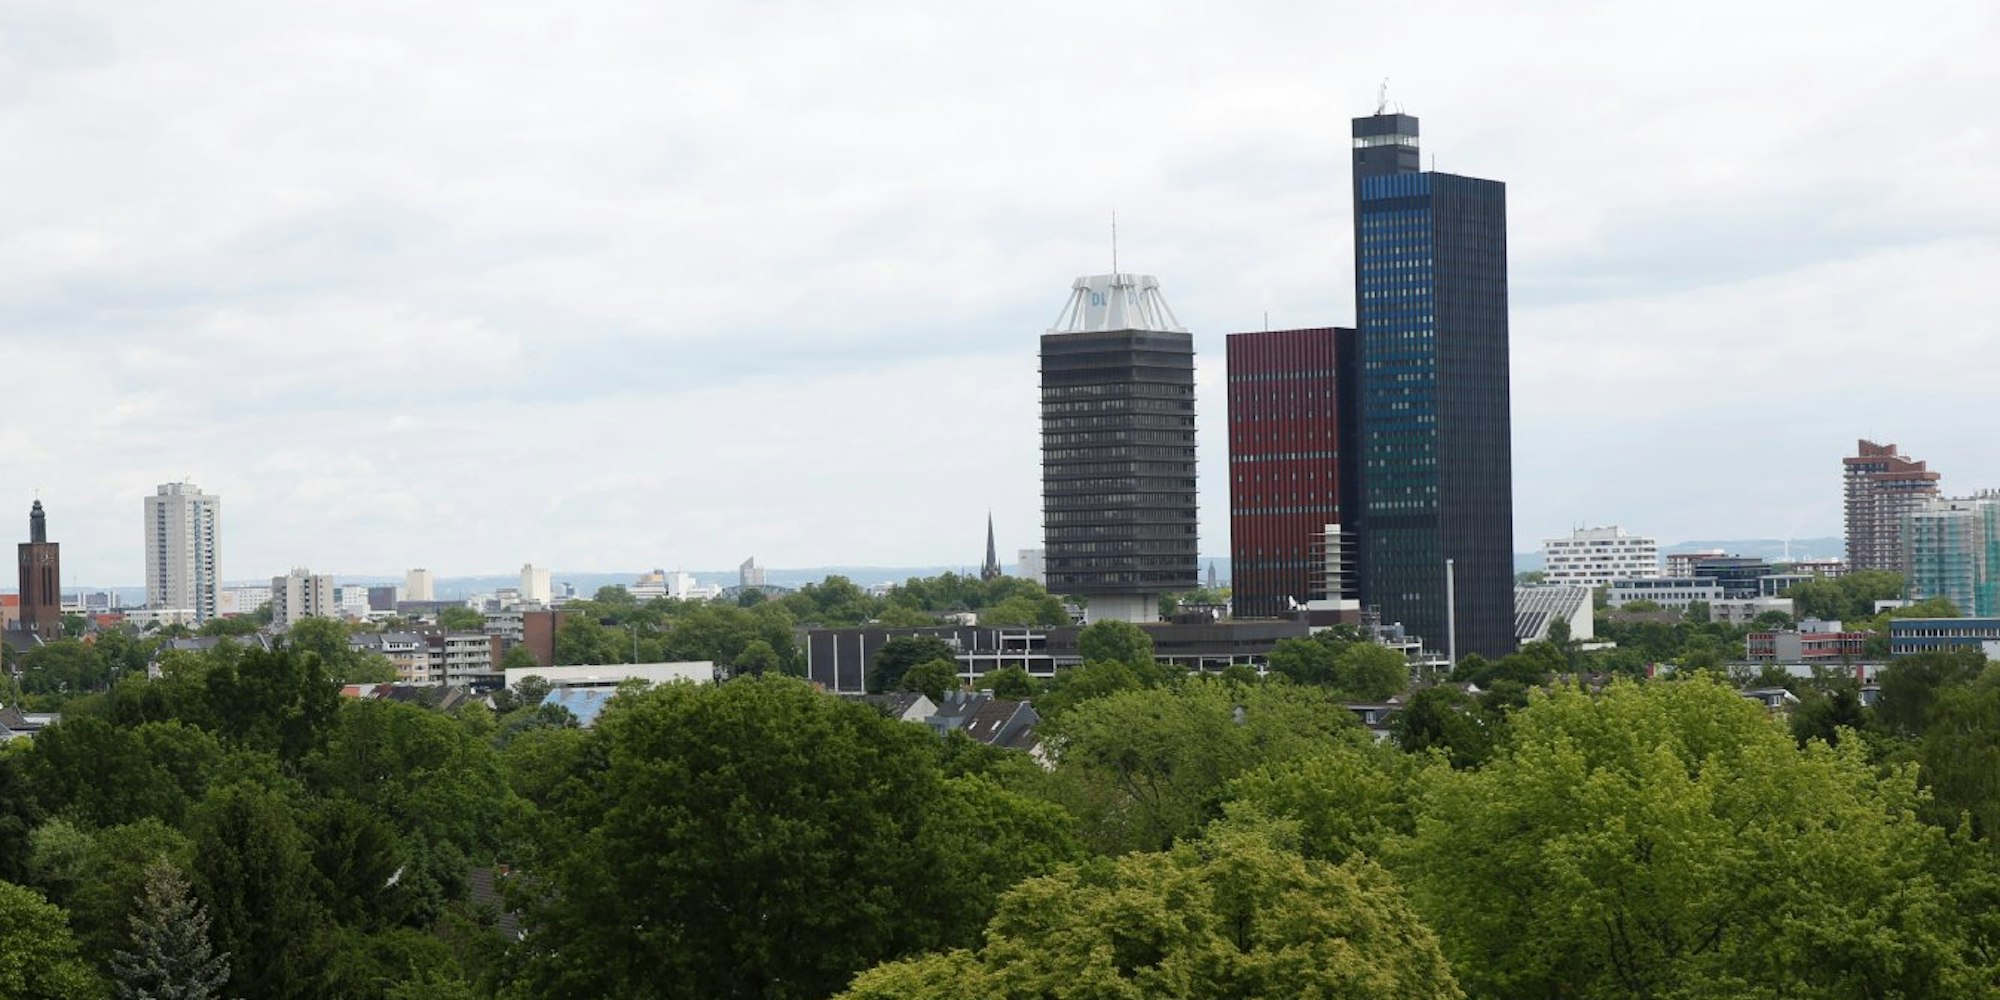 Das Welle-Hochhaus (rechts) wird gesprengt, der Deutschlandradio-Turm links daneben bleibt.